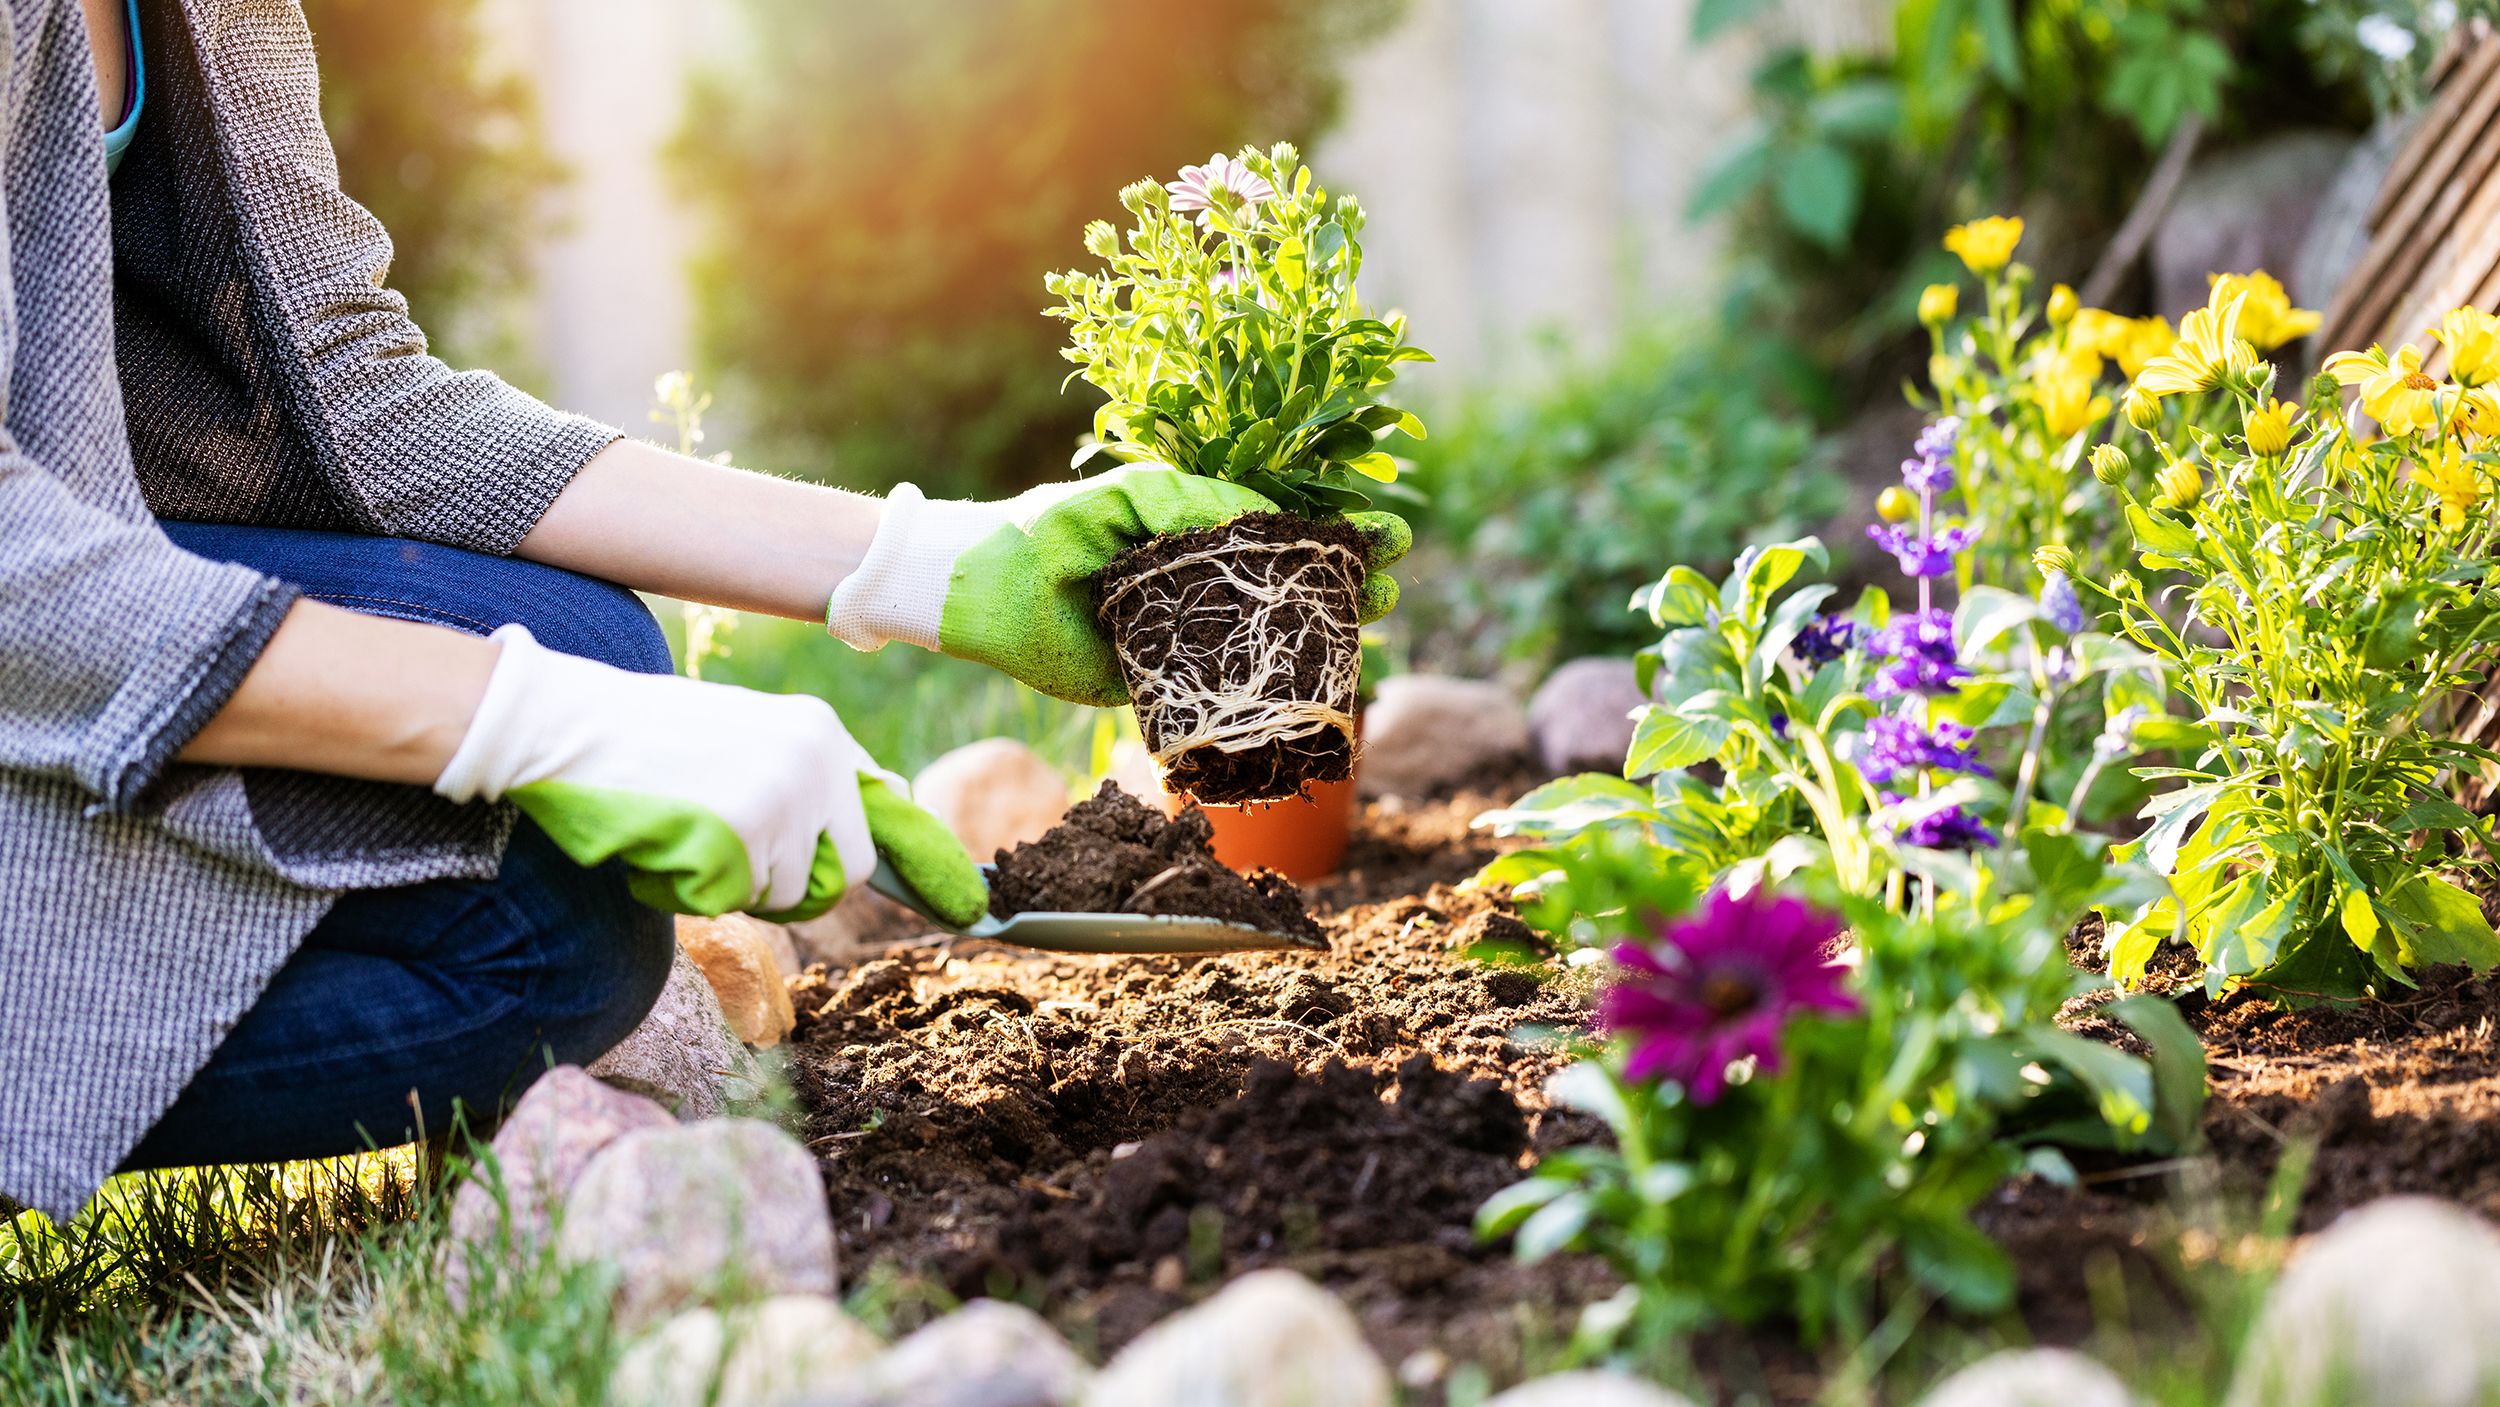 Gardening ideas for beginners  CNN Underscored